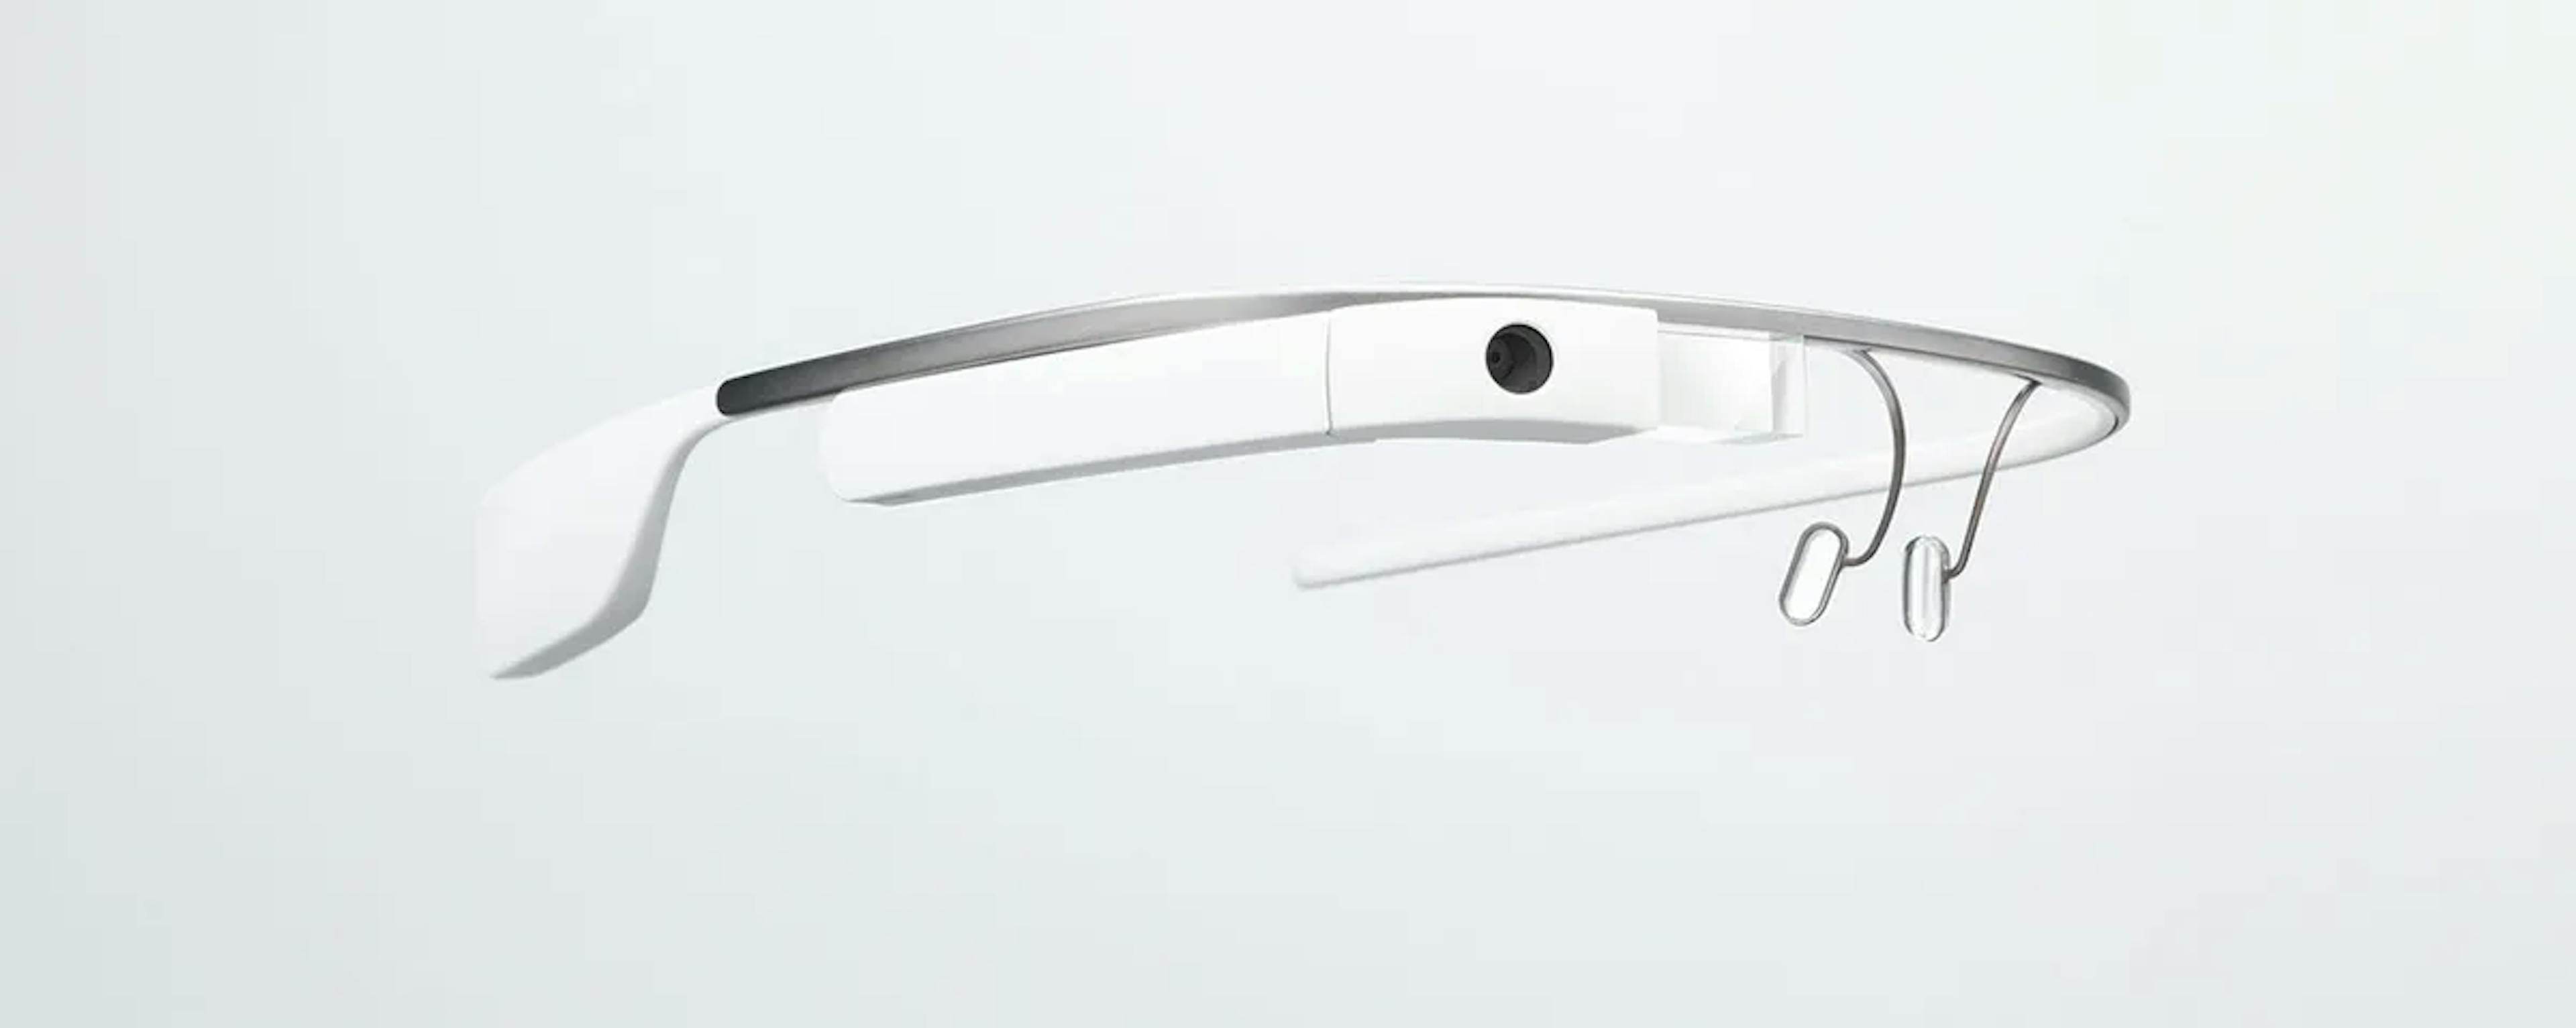  Google Glass đang được đề cập